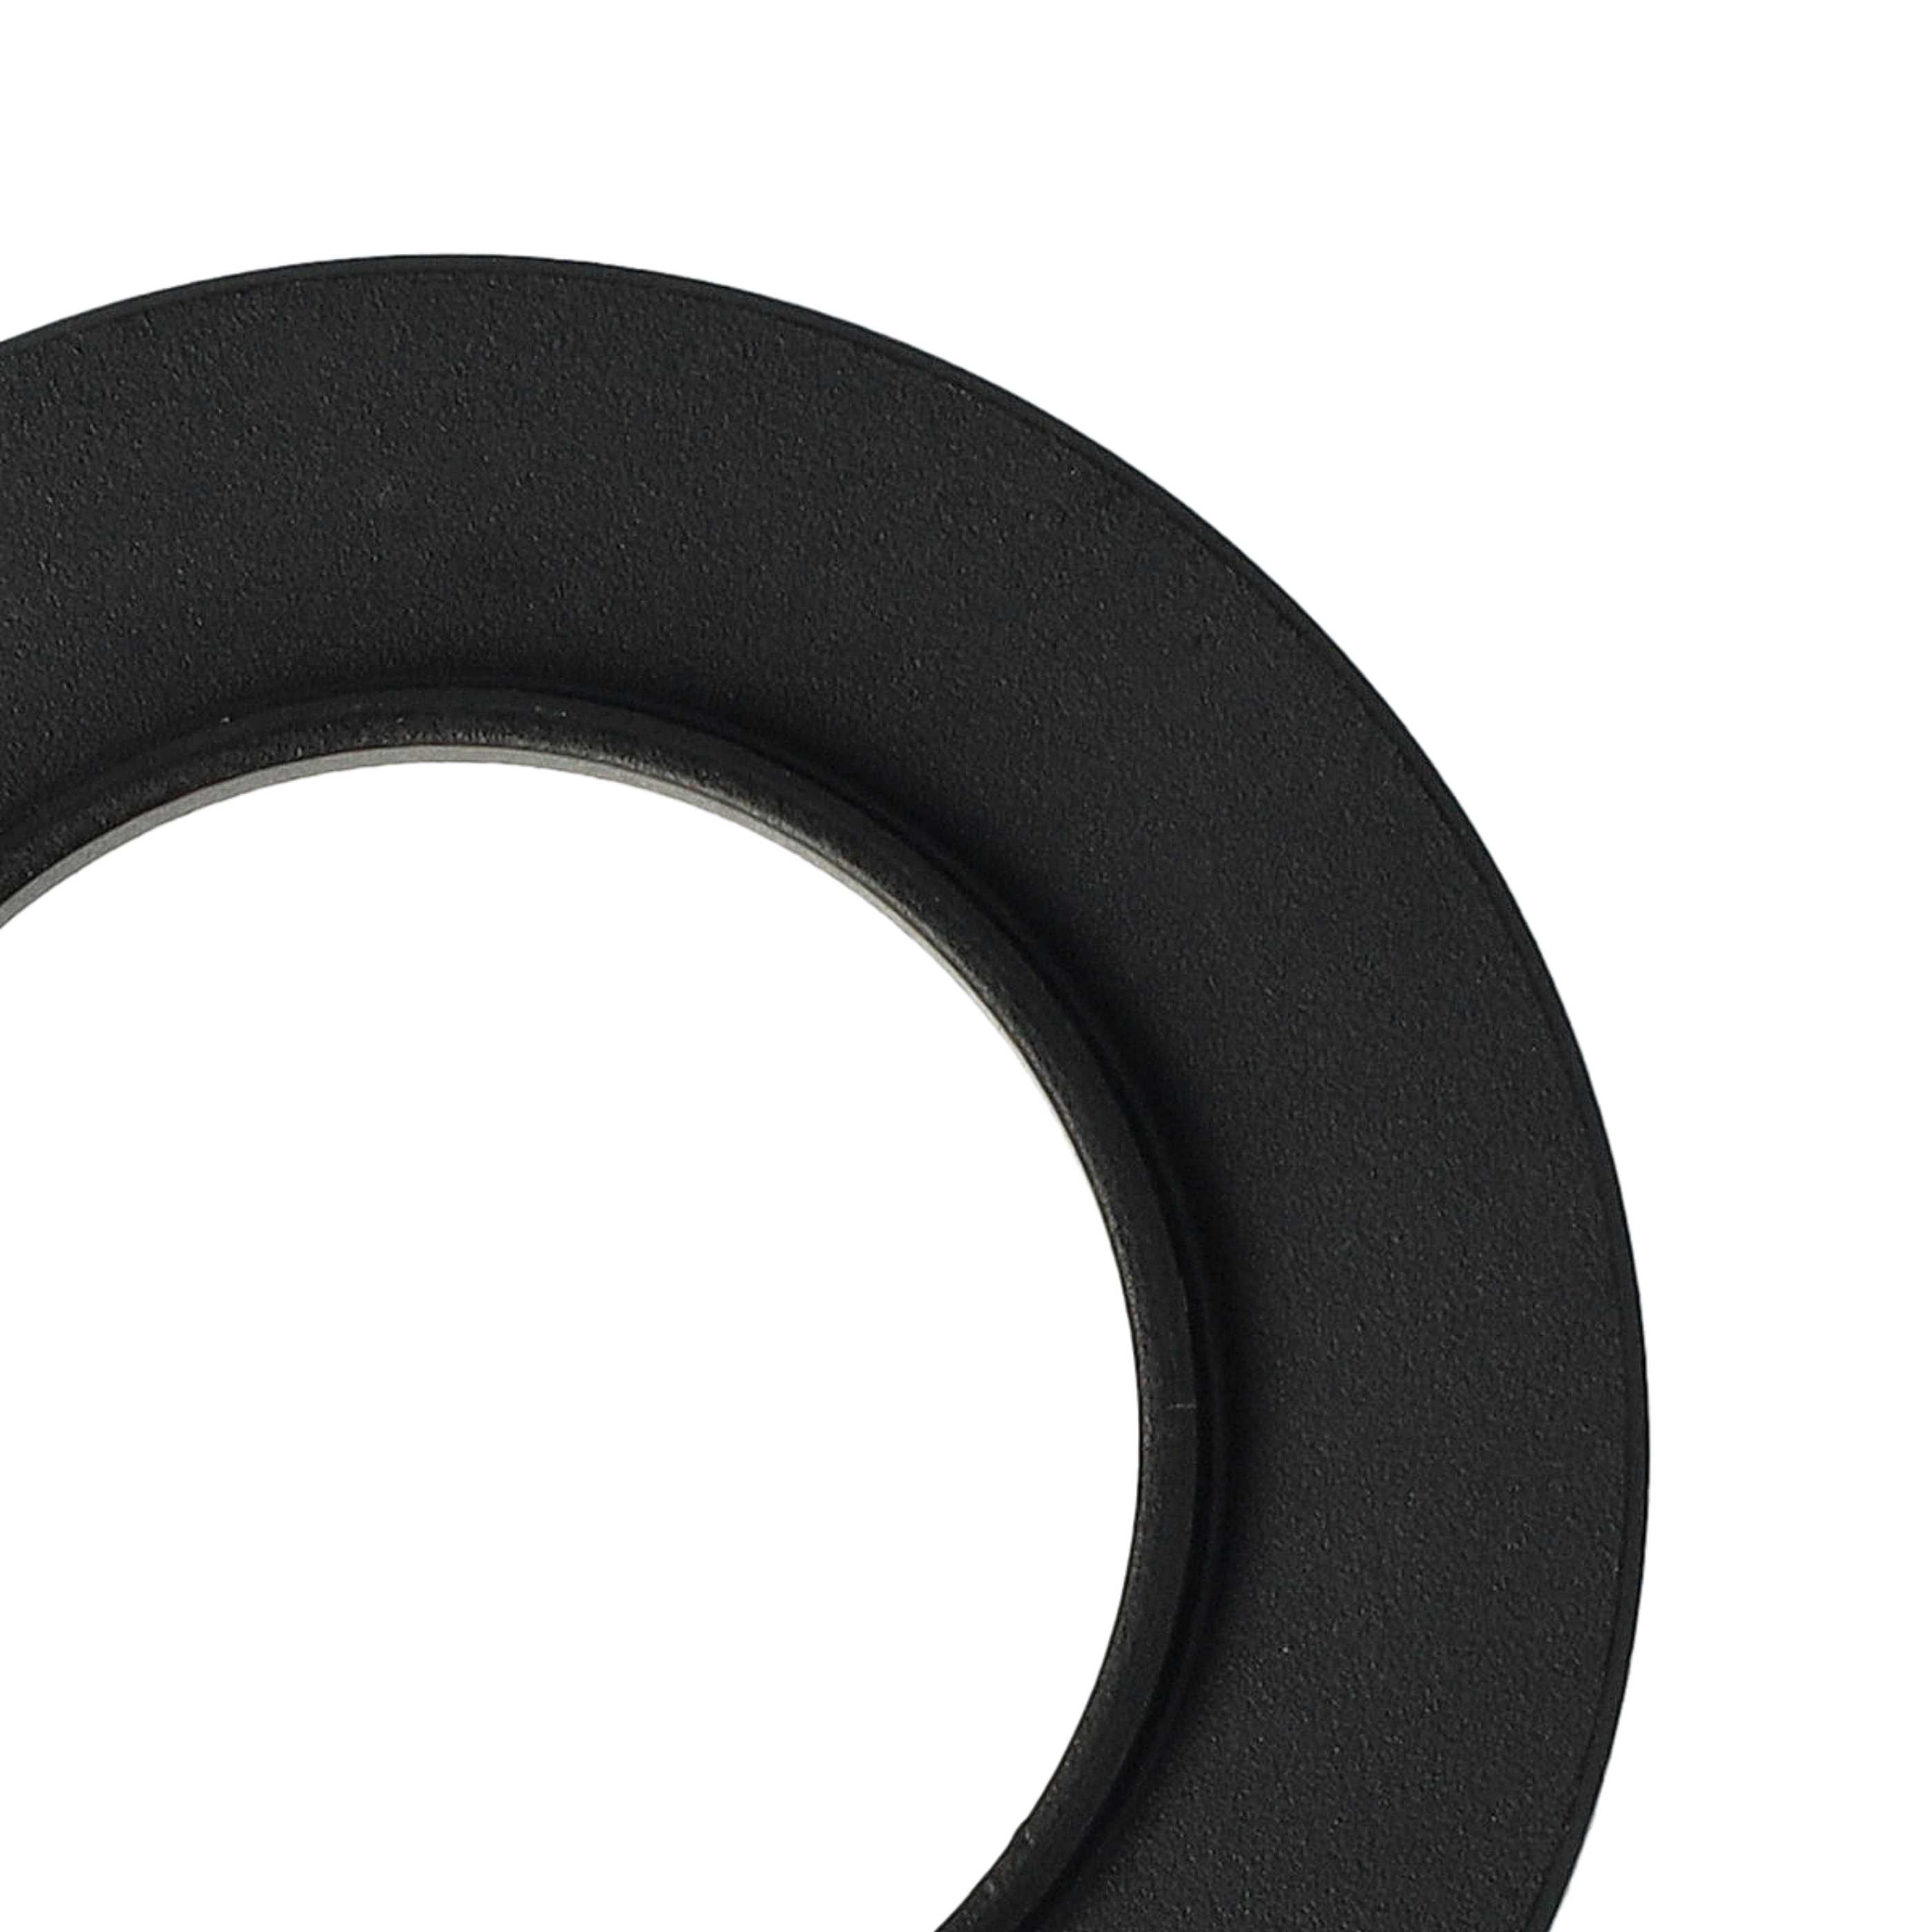 Step-Up-Ring Adapter 25 mm auf 37 mm passend für diverse Kamera-Objektive - Filteradapter